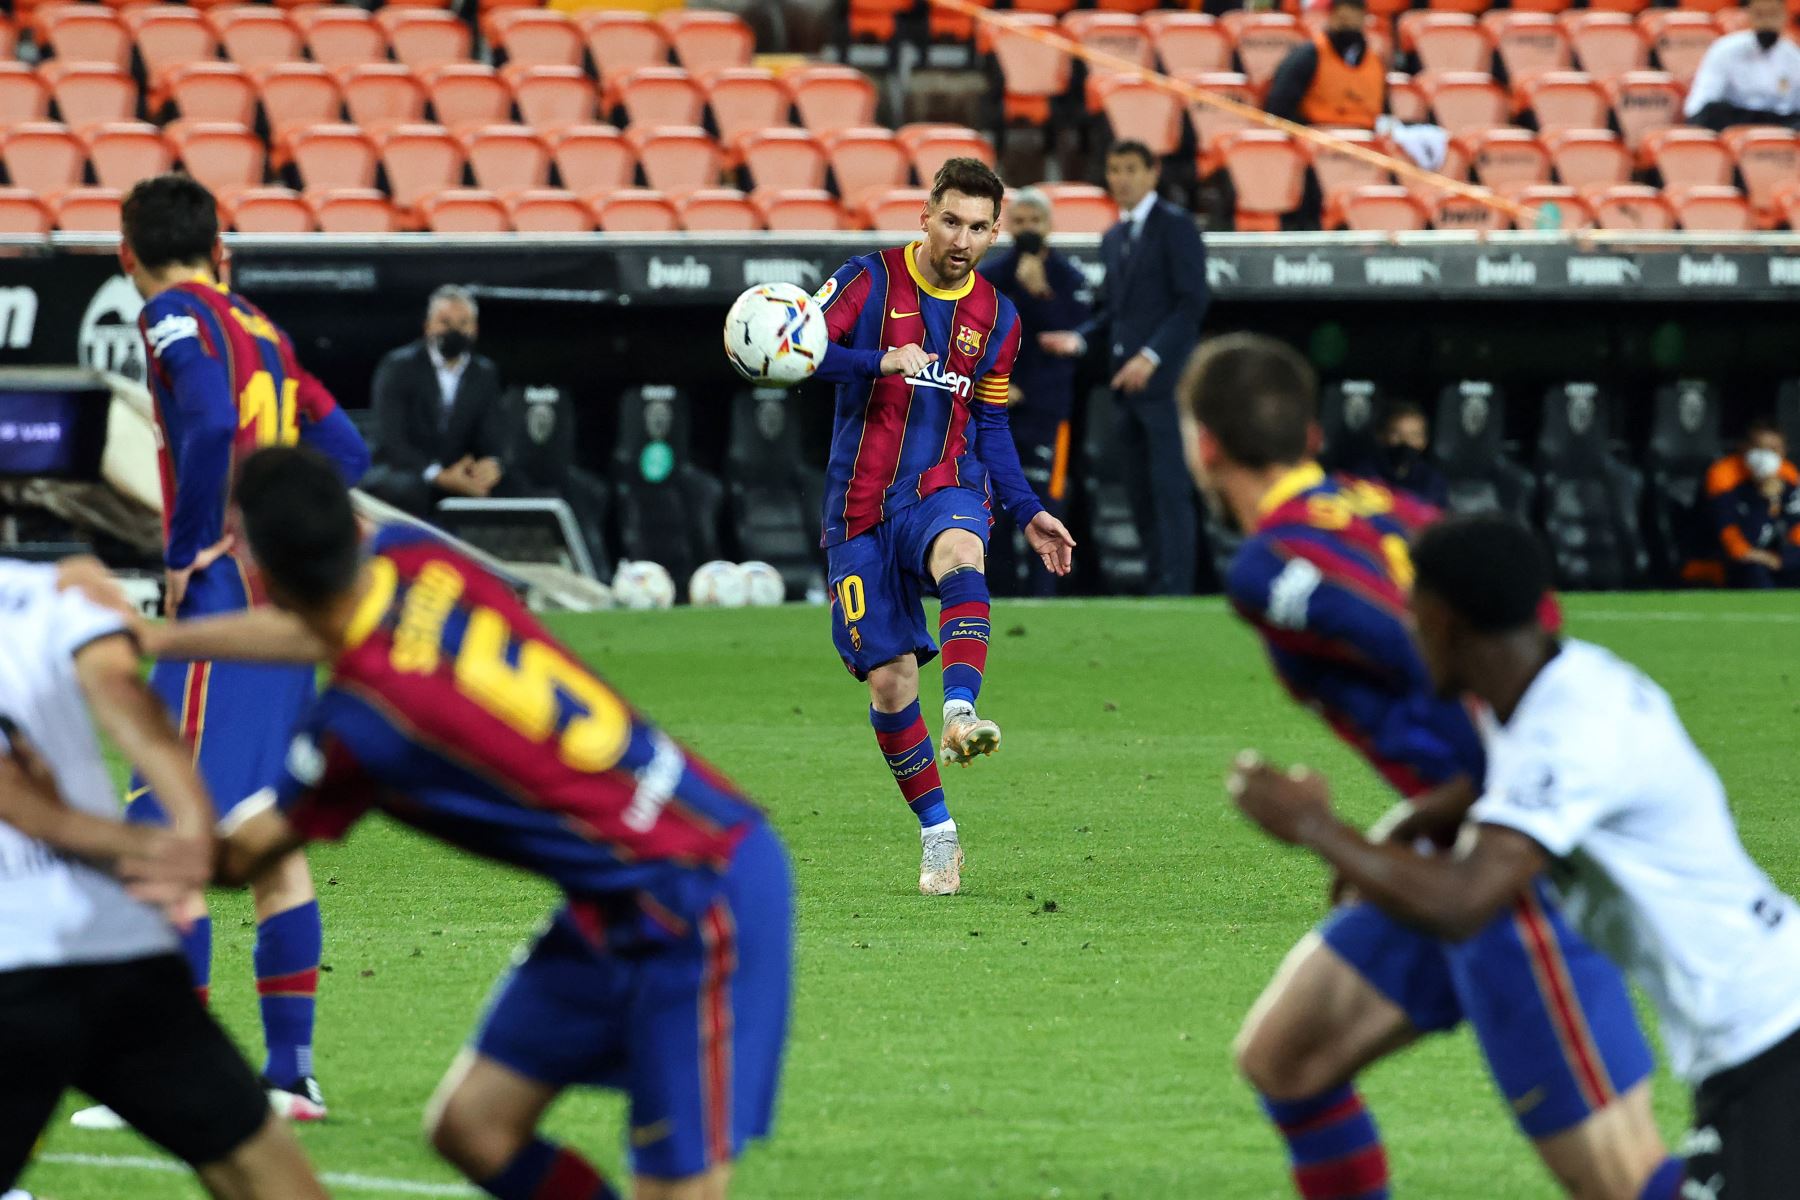 El delantero argentino del Barcelona Lionel Messi juega durante el partido de fútbol de la Liga española entre Valencia y Barcelona.
Foto: AFP